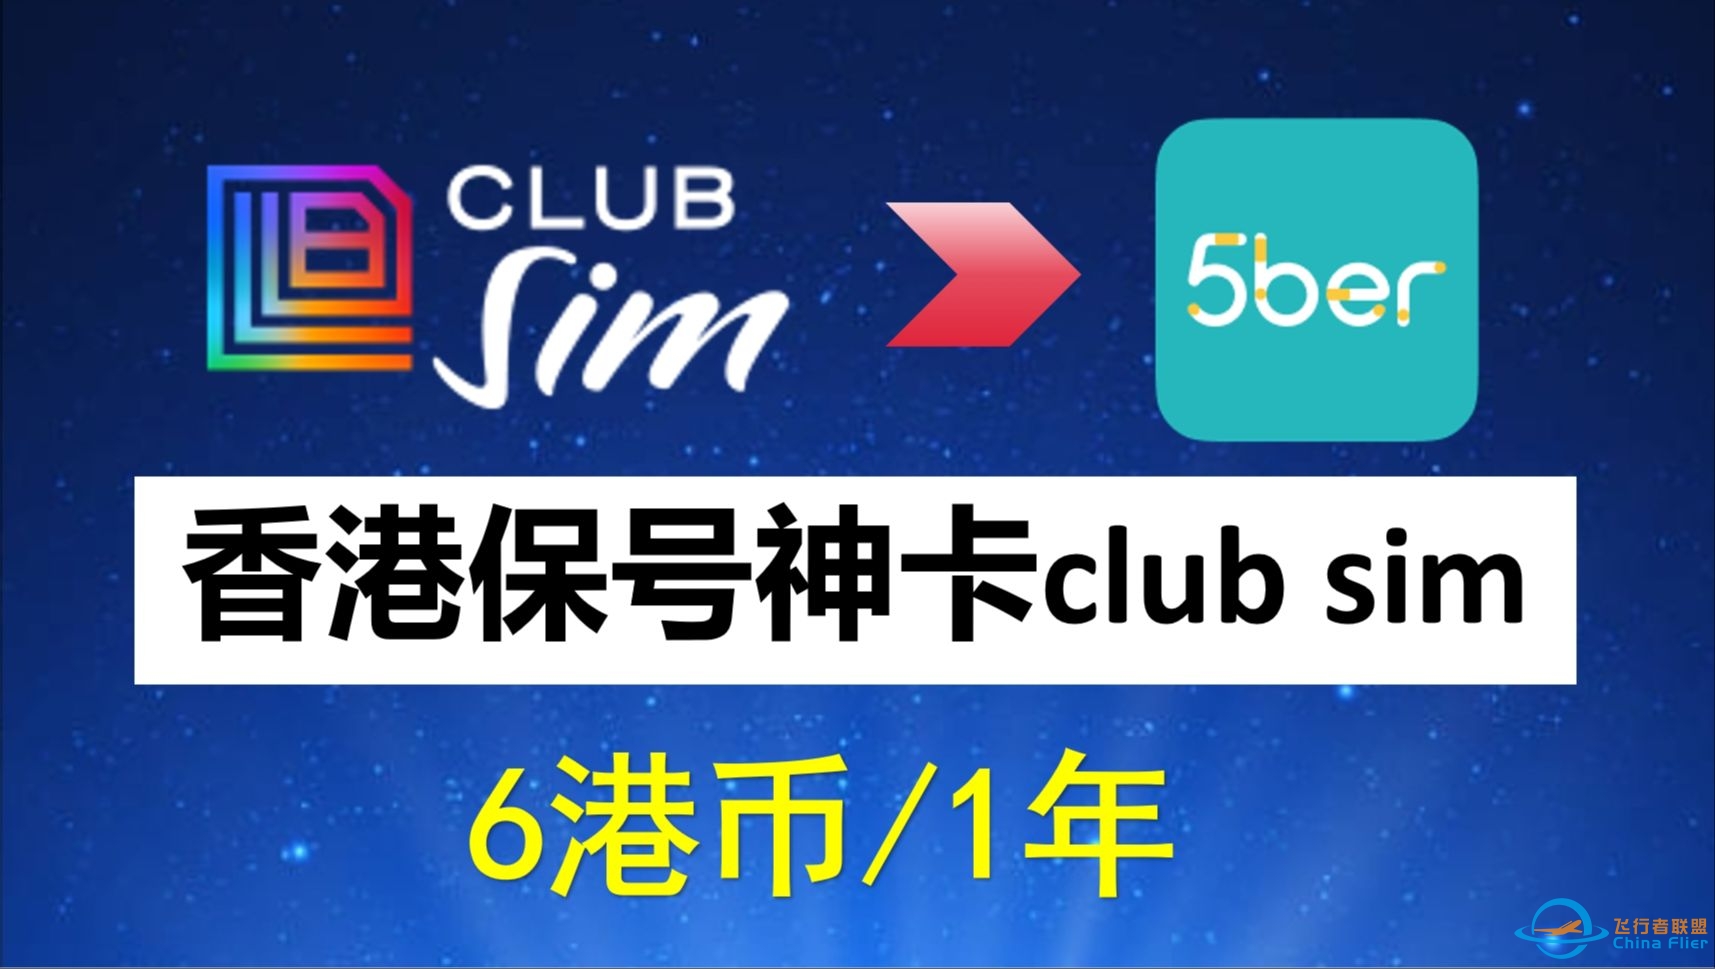 香港Club Sim保号手机卡全教程、6港币，注册、购买、使用、0月租、免费接收短信、 课金易如何充值？港区apple id充值? 如何购买5ber-7157 